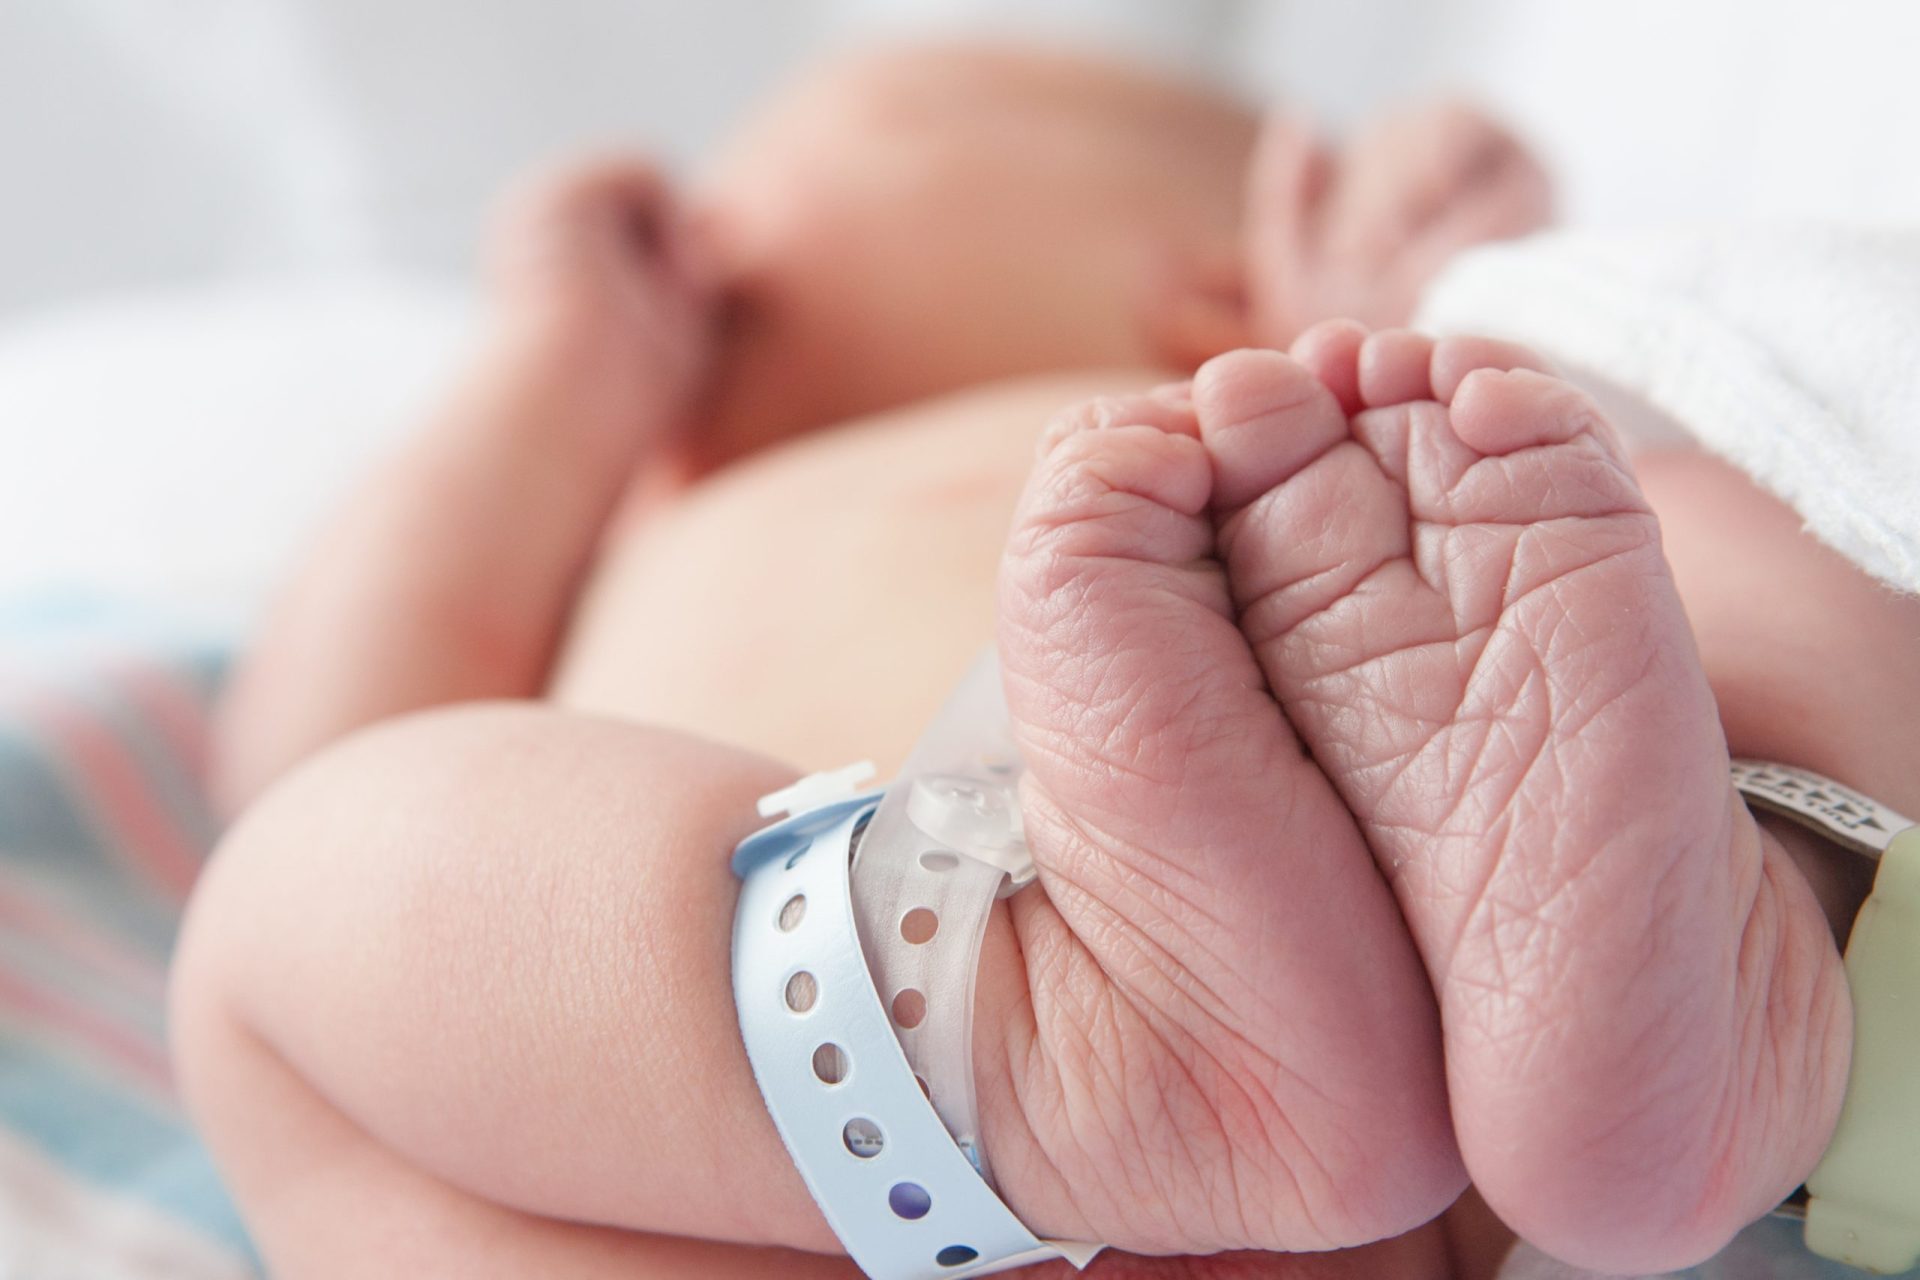 Bebé de apenas 29 dias infetado com legionella no Hospital de Évora